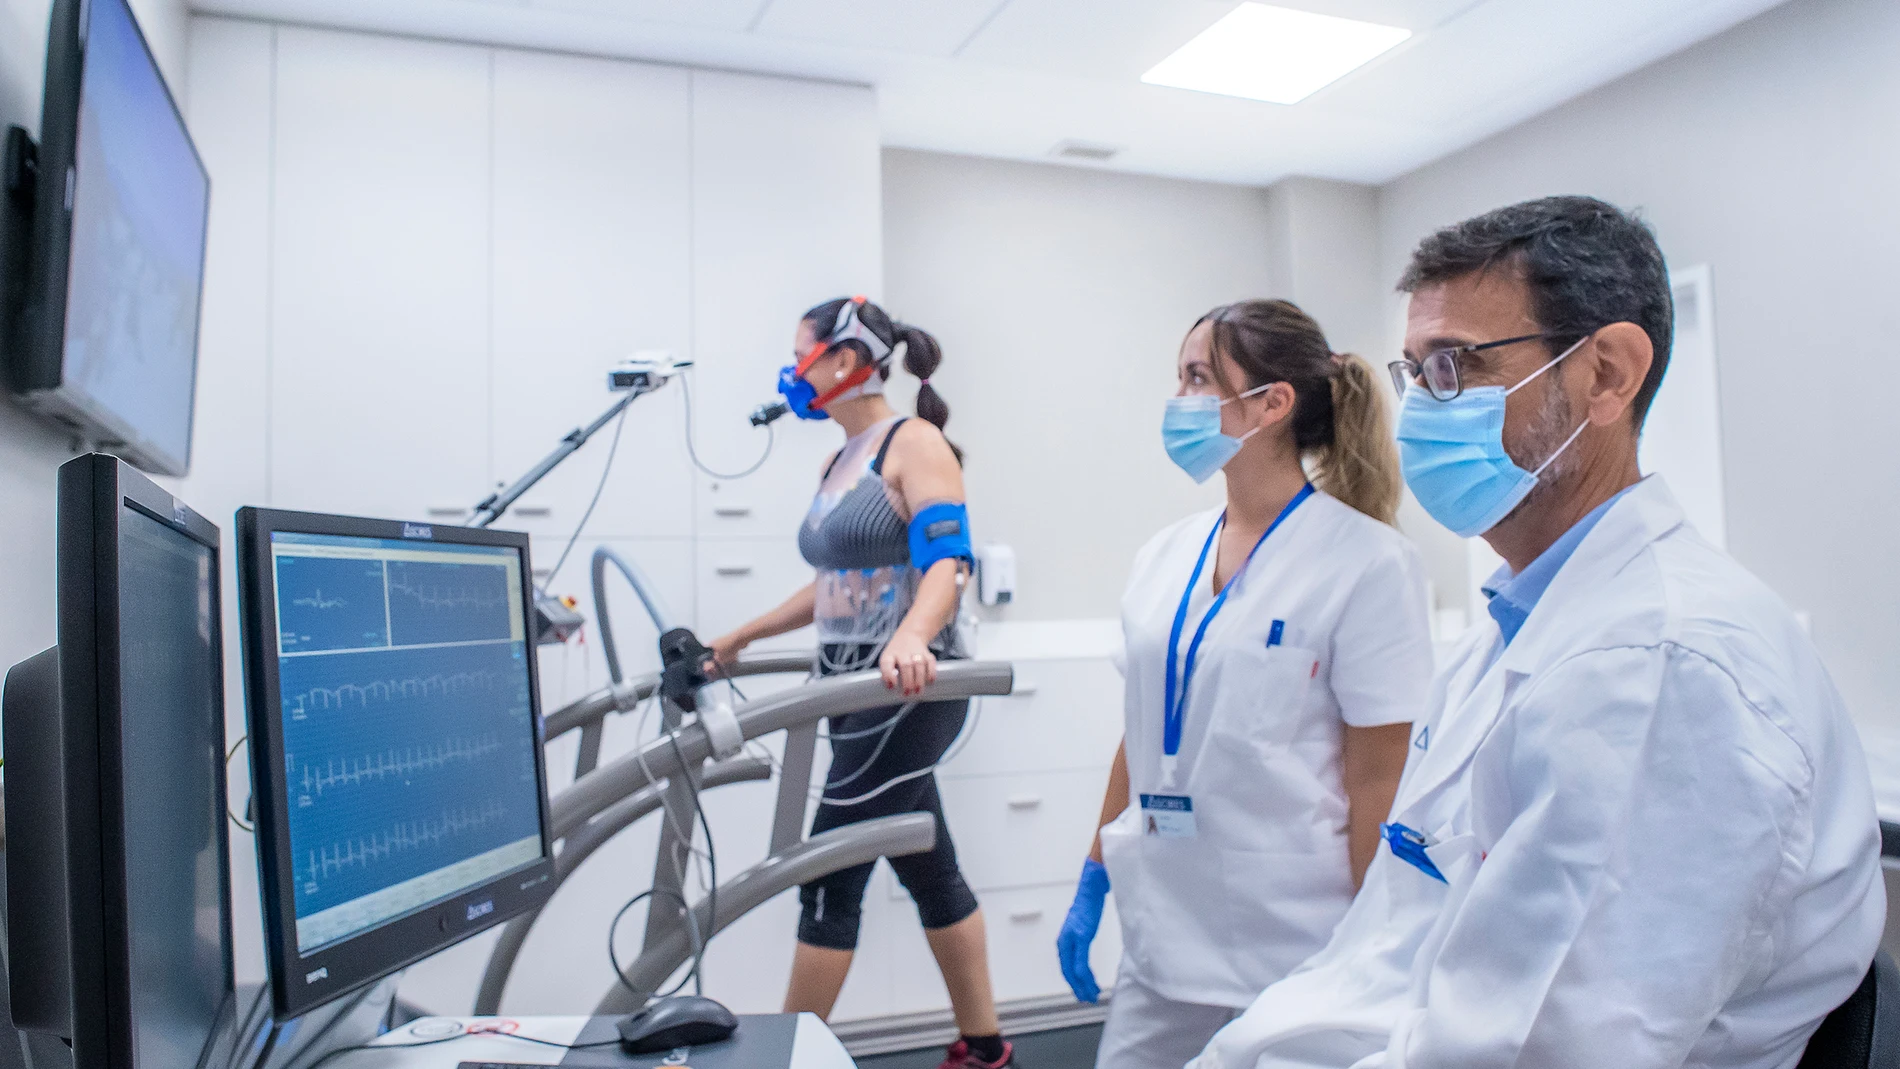 La empresa Ascires es el primer centro español acreditado por la Sociedad Europea de cardiología como laboratorio de cardiorresonancia magnética en tres ámbitos